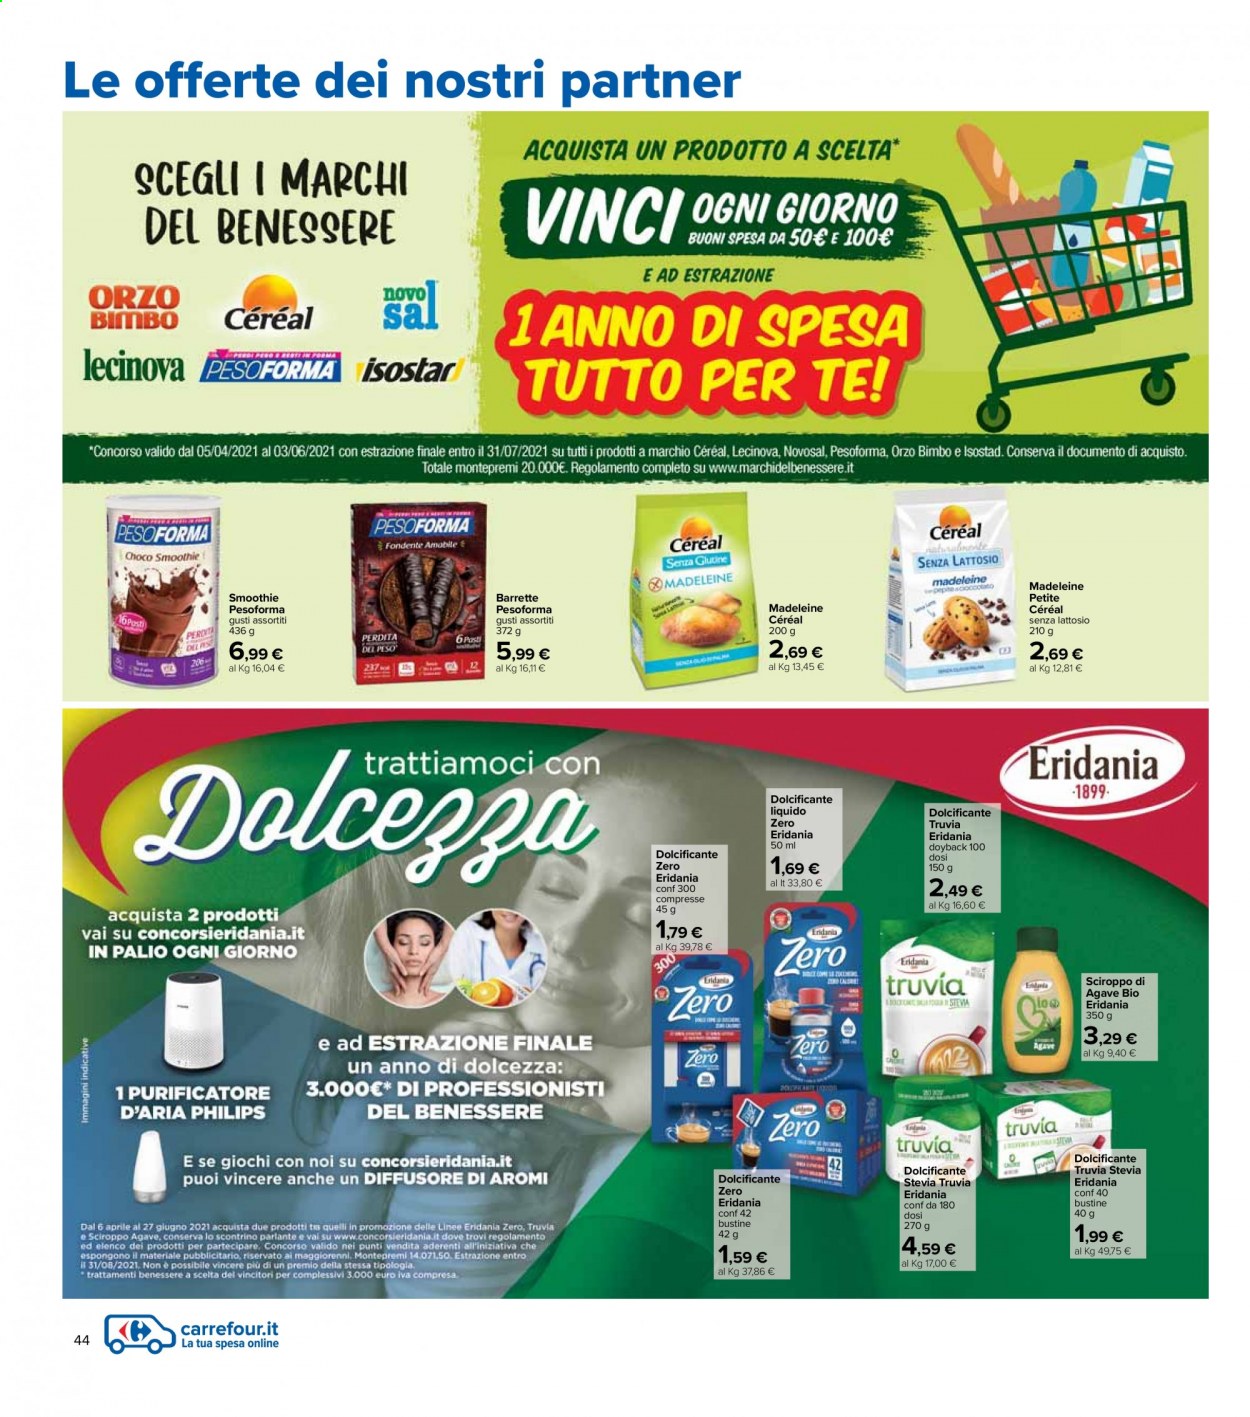 Volantino Carrefour - 6/4/2021 - 21/4/2021 - Prodotti in offerta - Philips, dolcificante, barretta, orzo, smoothie, diffusore. Pagina 44.